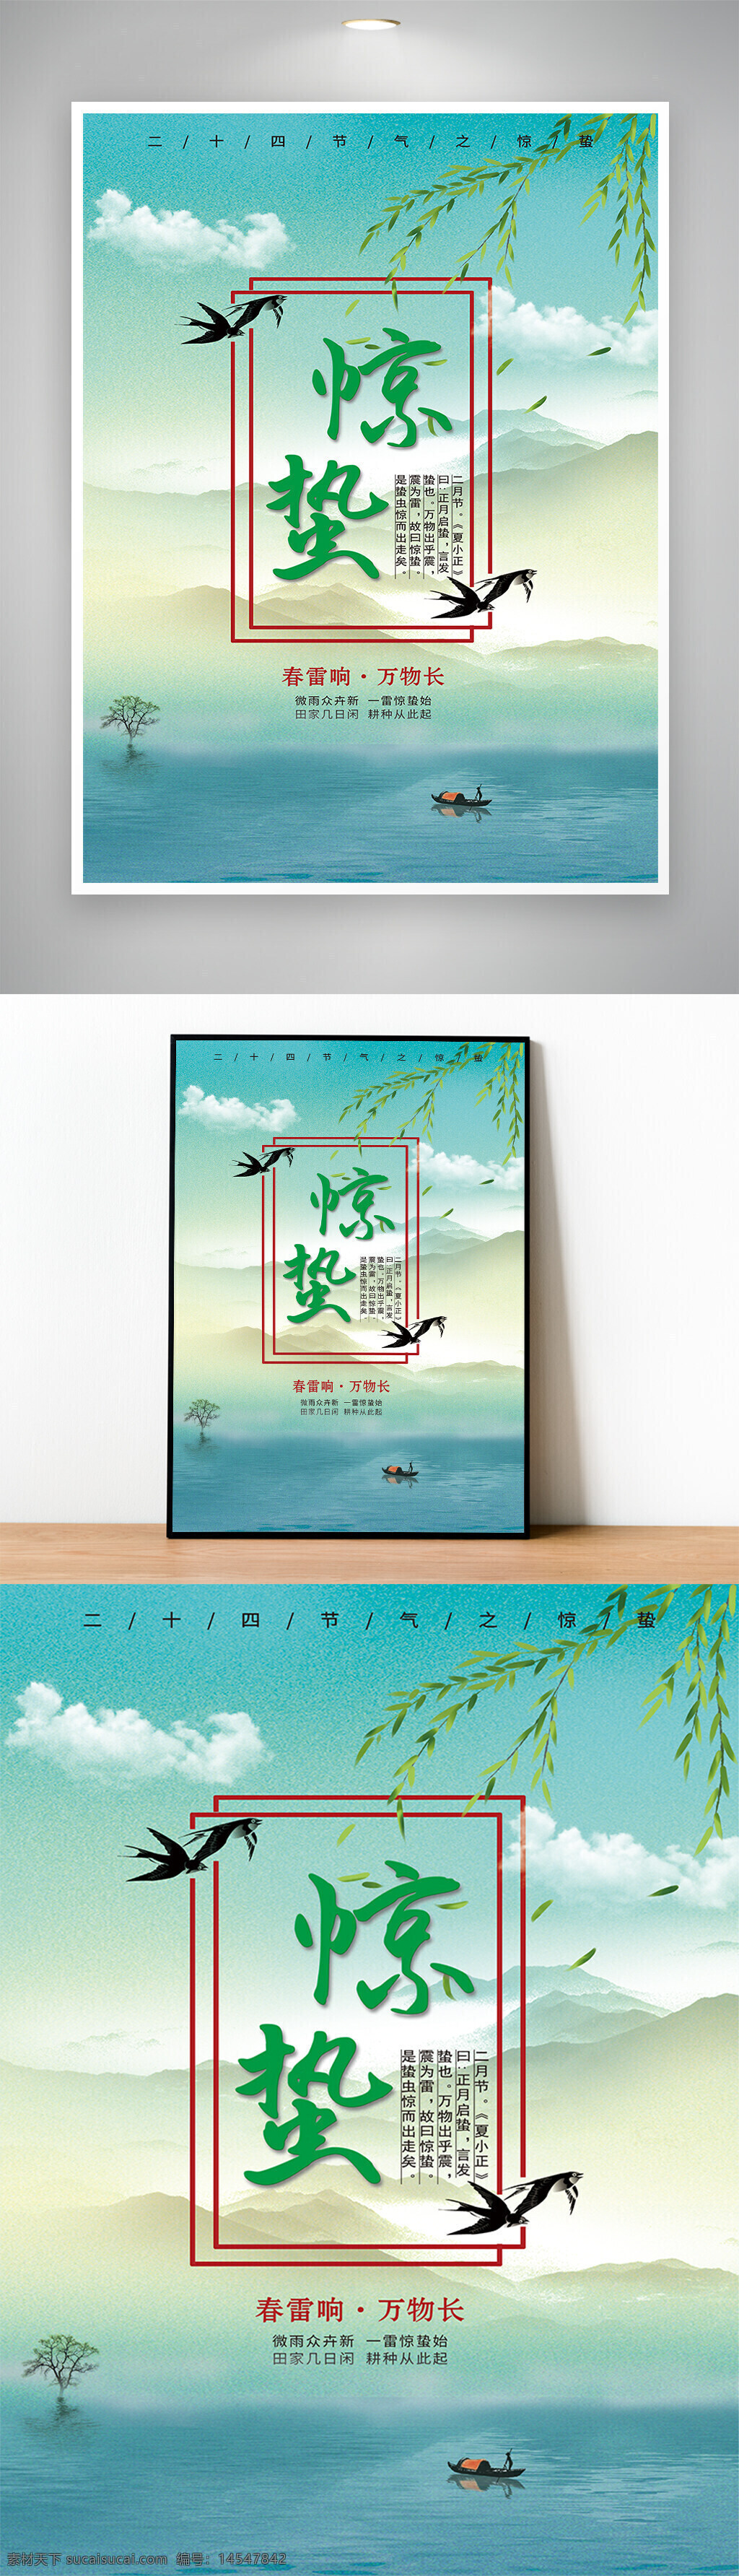 二十四节气 惊蛰 春 大气 山水 燕子 柳条 水墨 中国风 绿色 纹理 海报 宣传